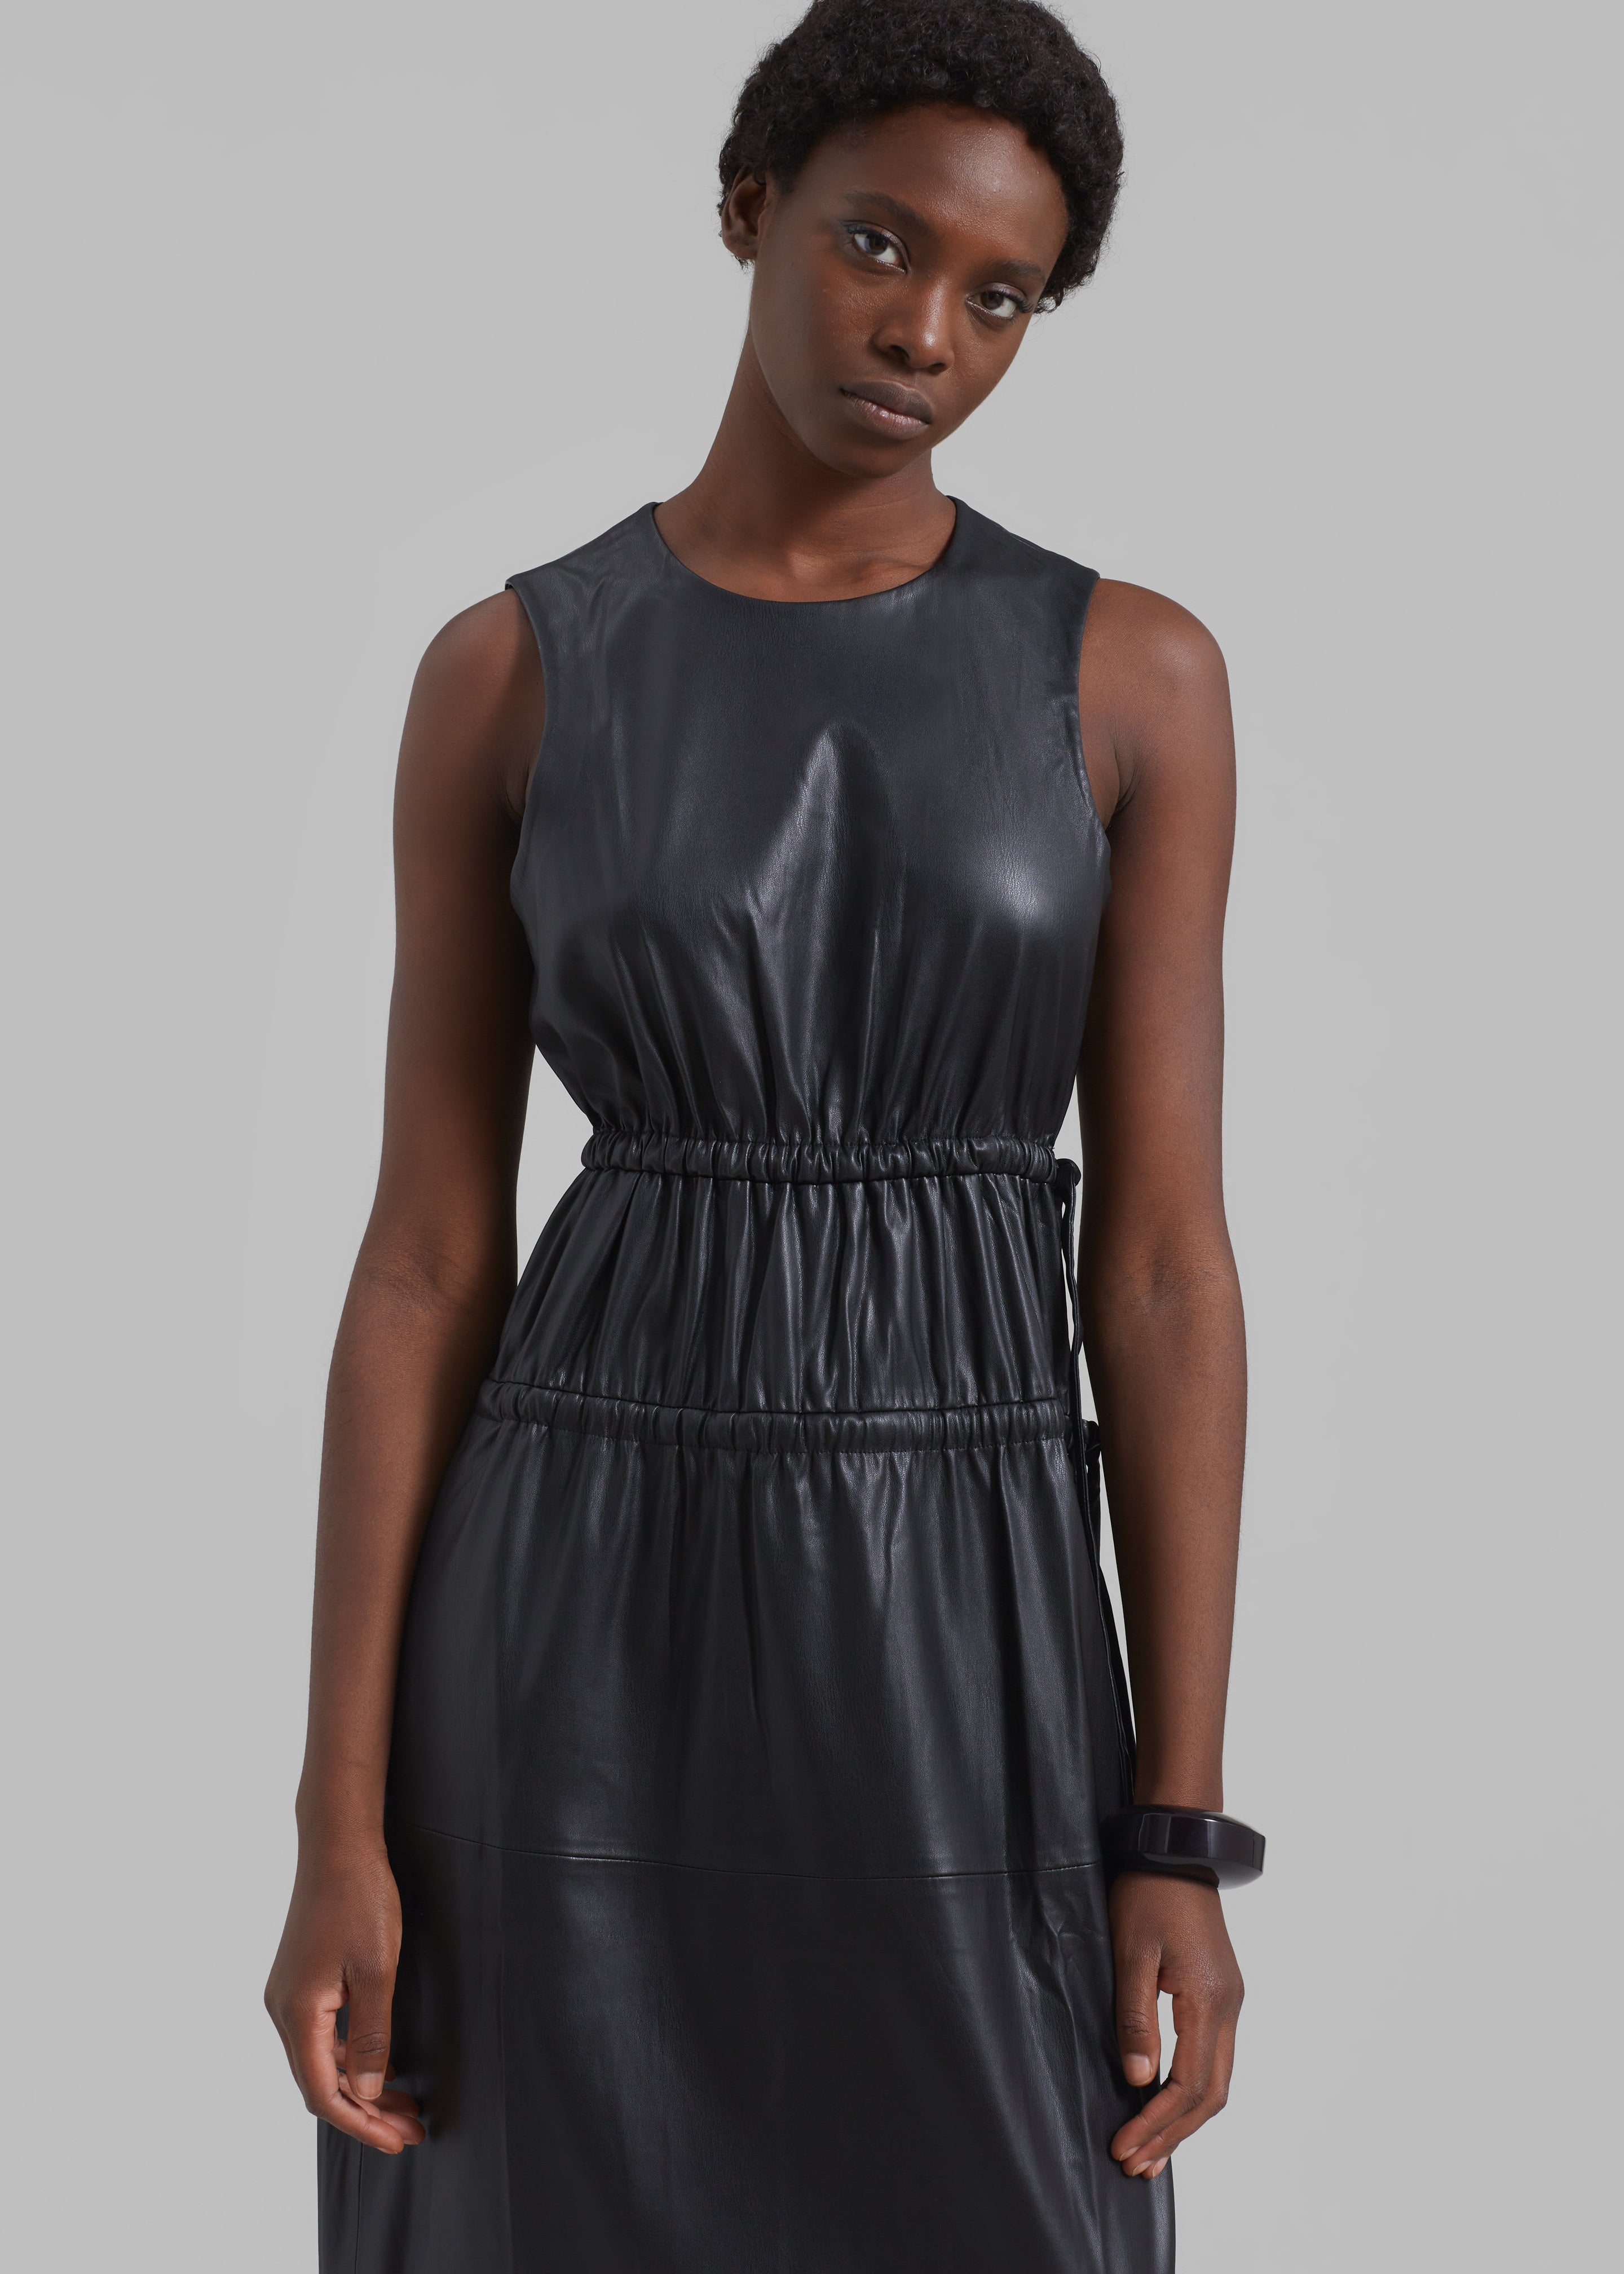 Proenza Schouler White Label Faux Leather Drawstring Dress - Black